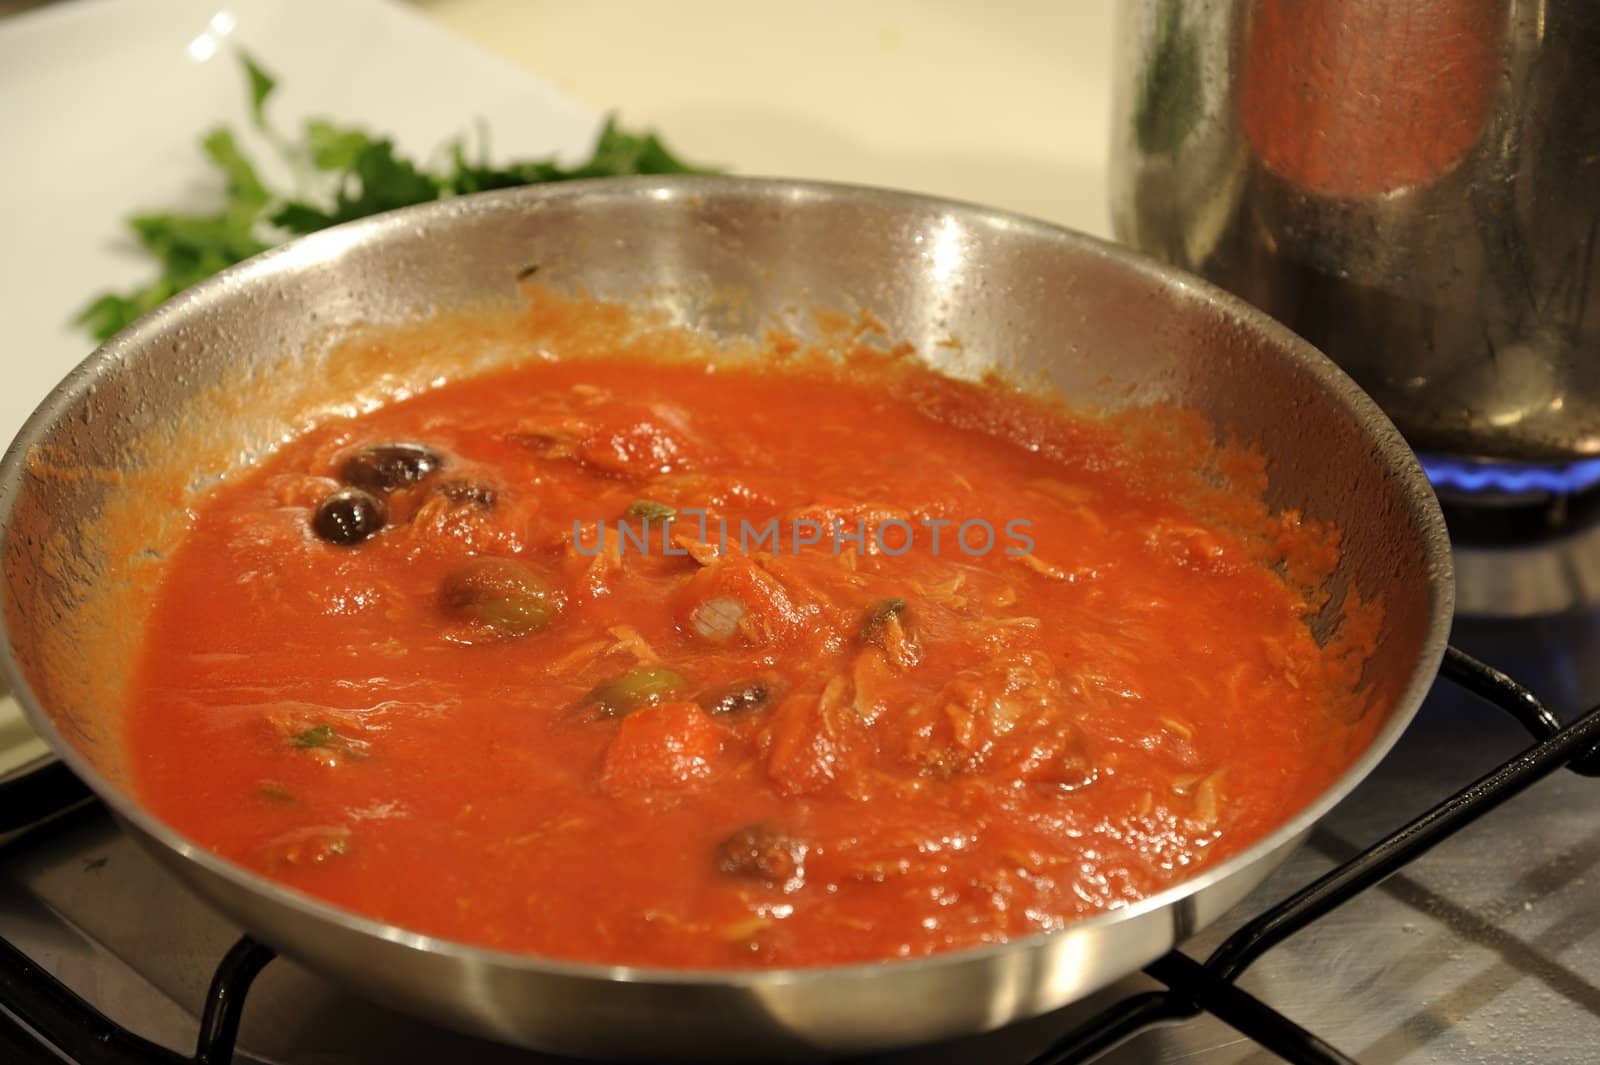 Puttanesca sauce for Spaghetti by mizio1970